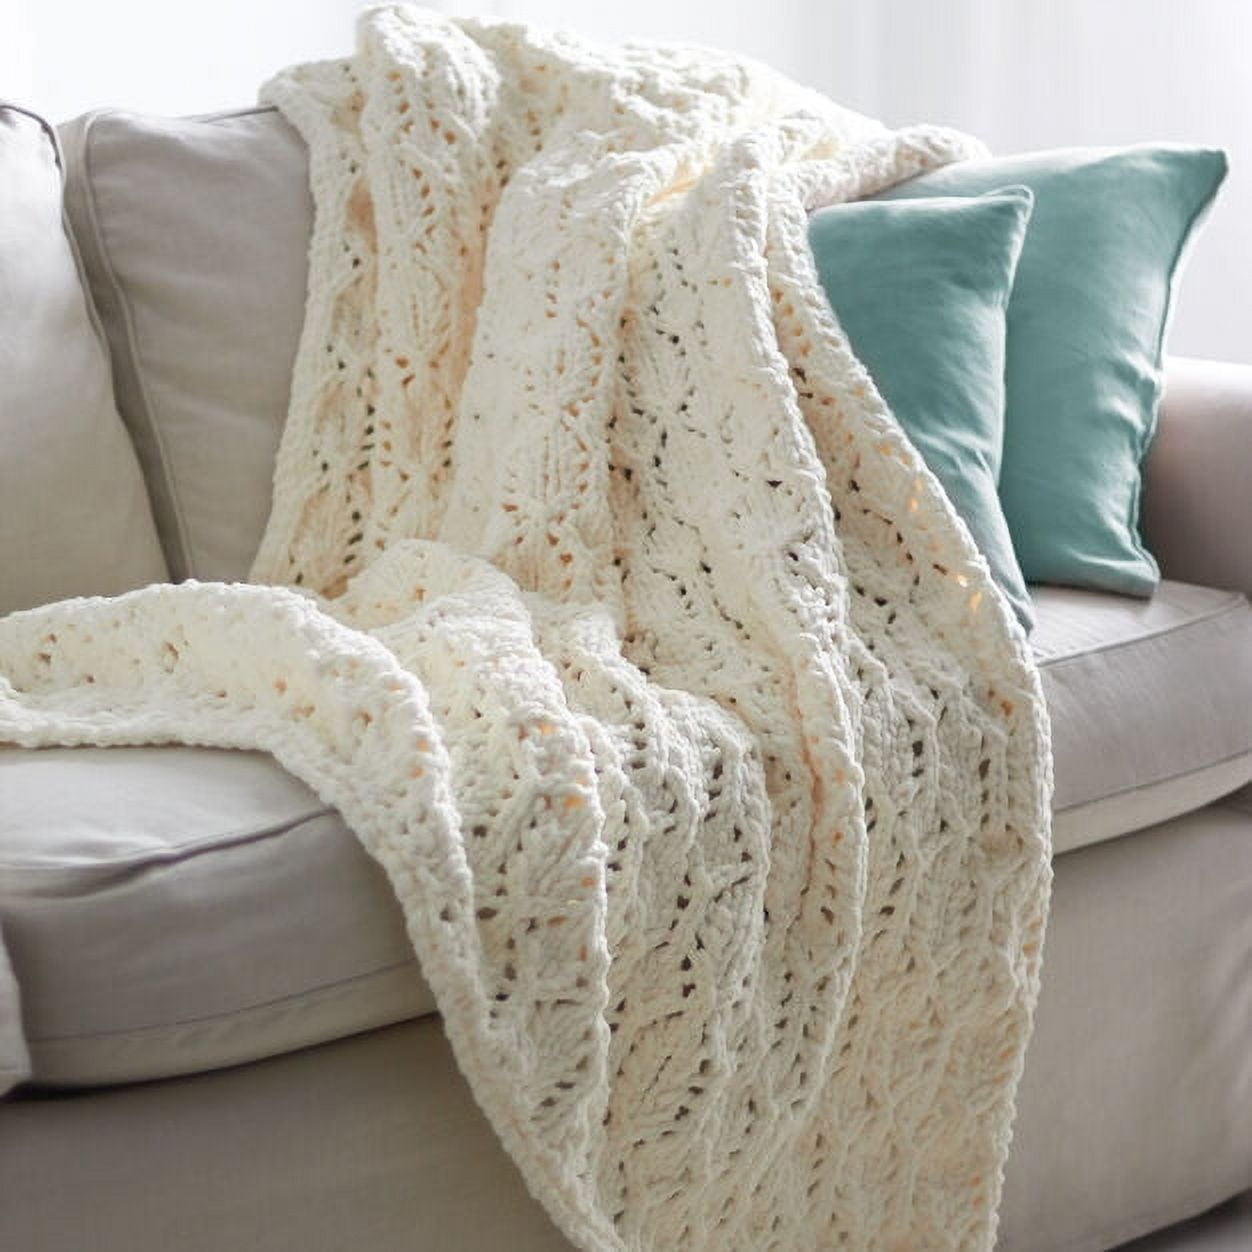 Bernat Blanket Yarn-Oceanside, 1 count - Baker's